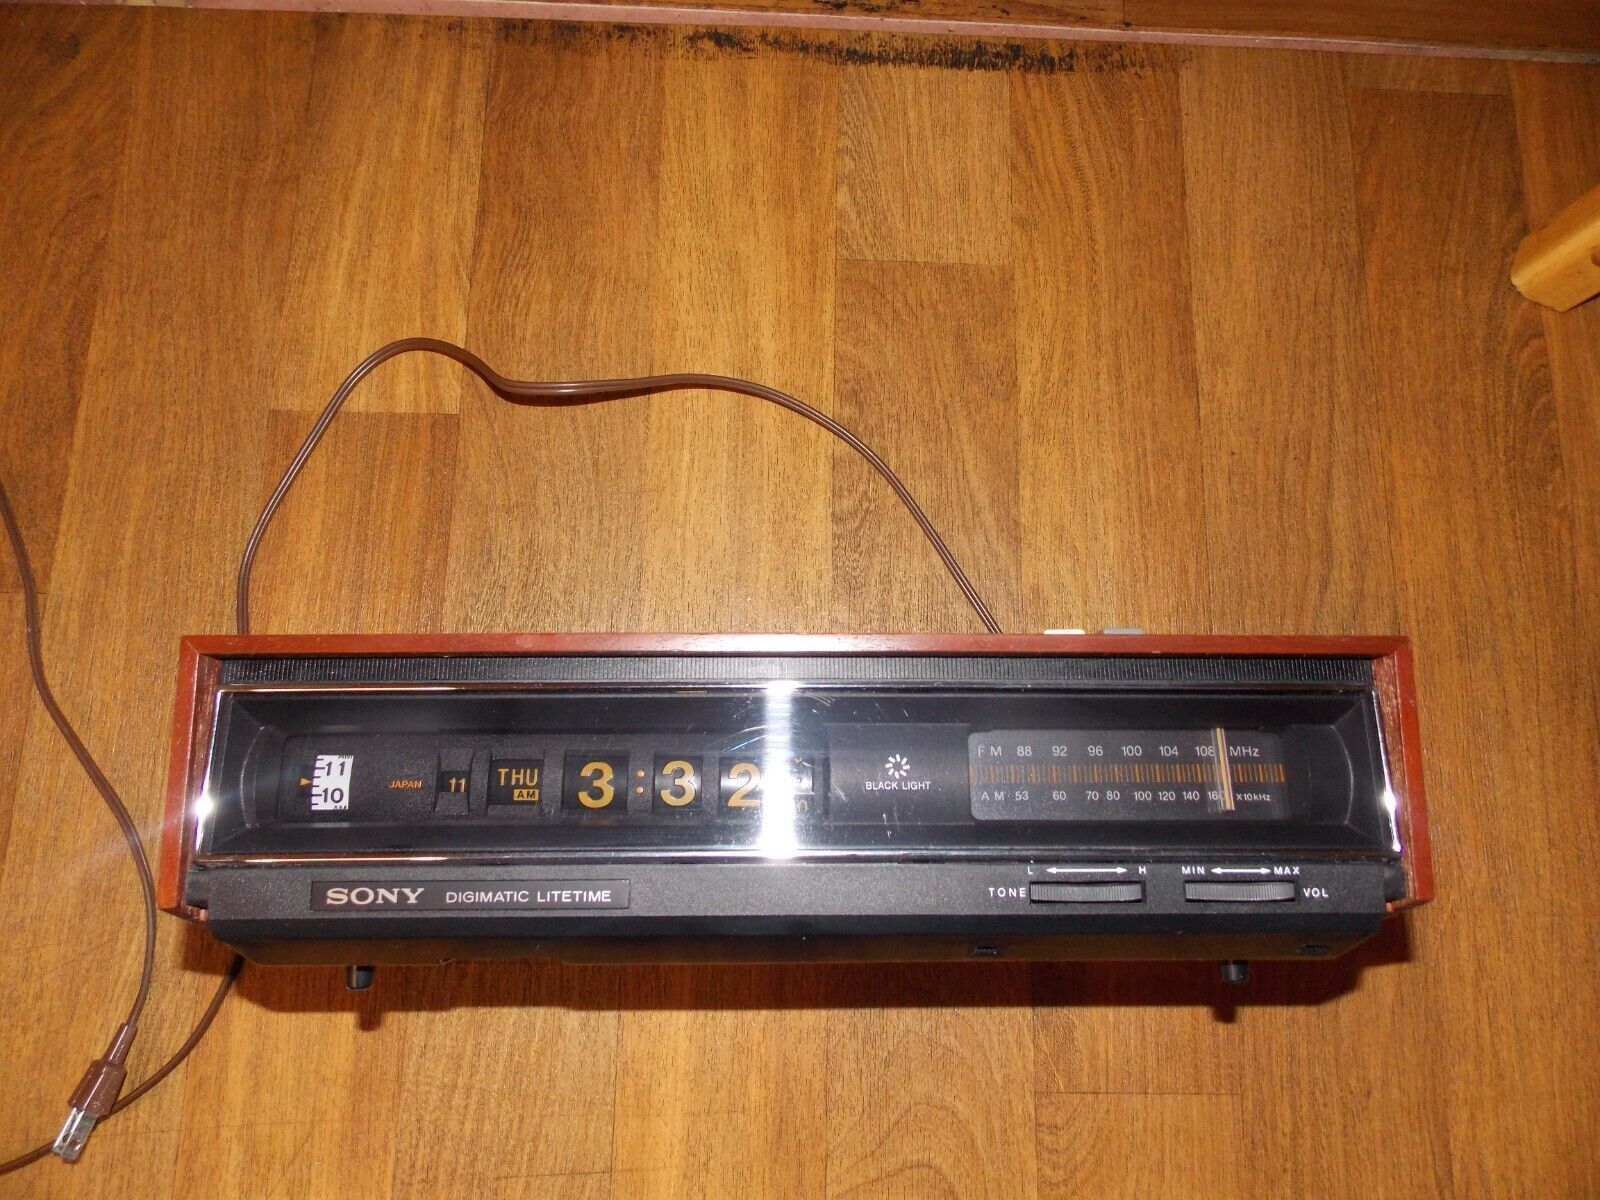 Vintage Sony Tfm-C770w Digimatic Lifetime Am Fm Roller Clock Radio Alarm